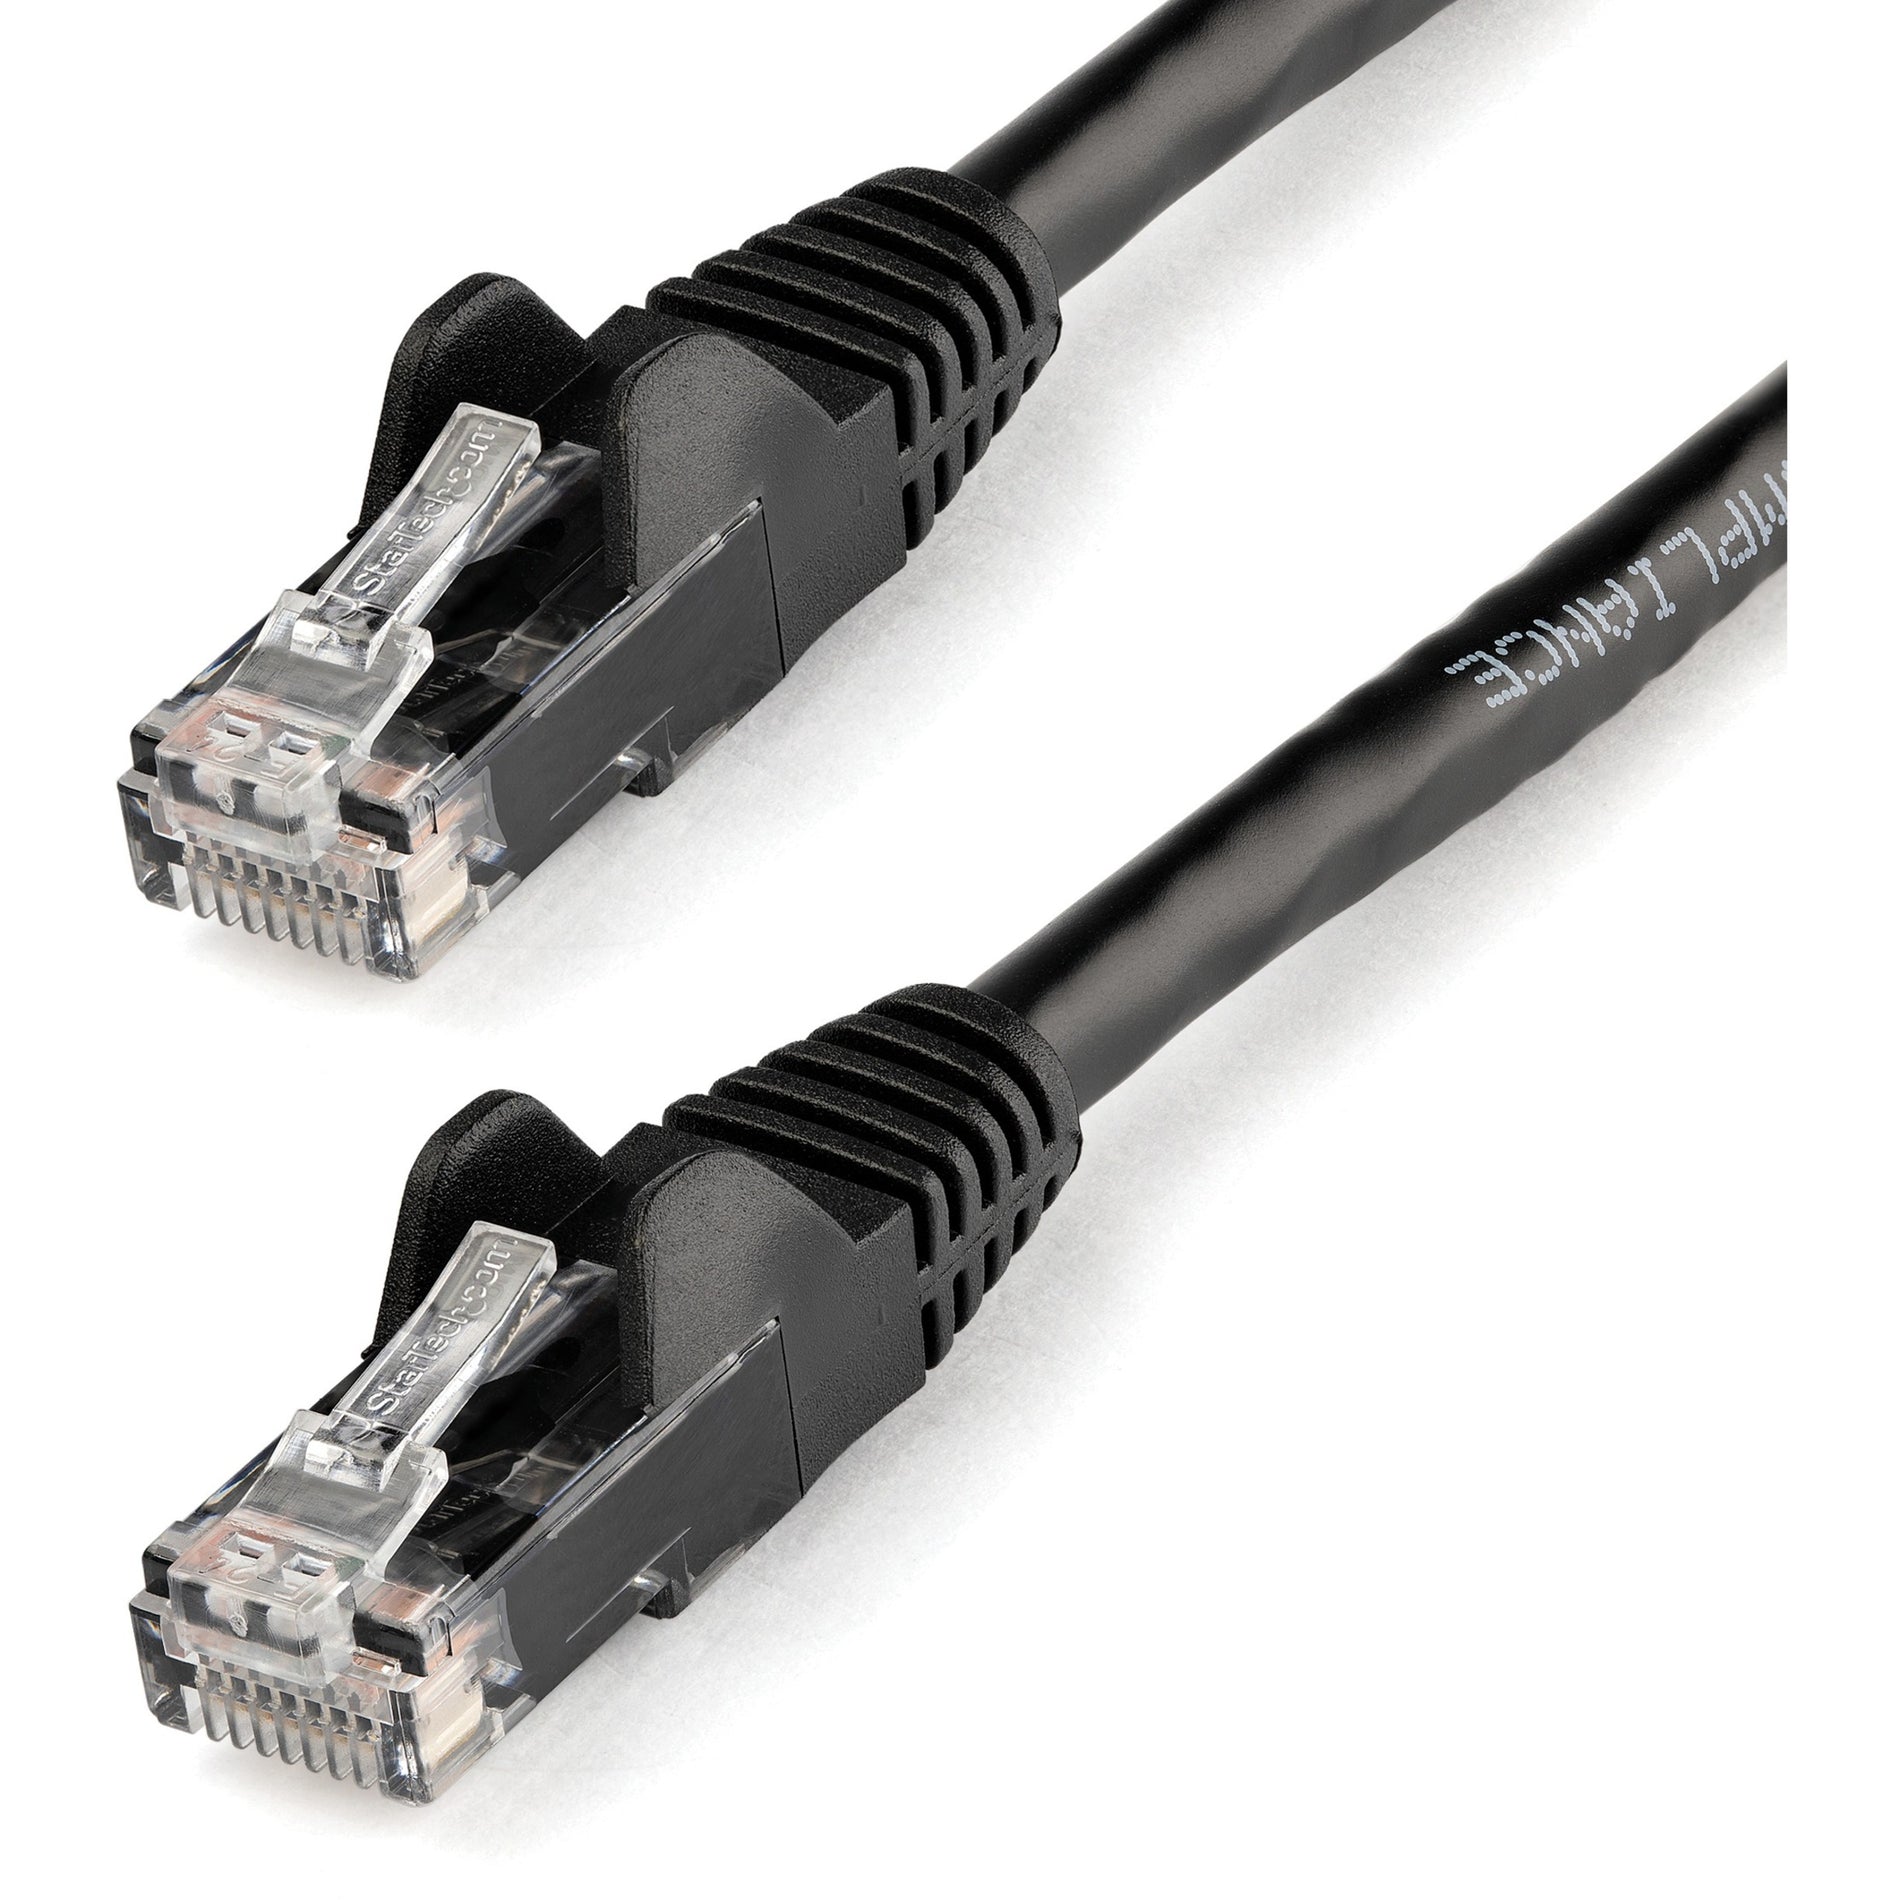 StarTech.com N6PATCH5BK Cat. 6 Patch Cable, 5 ft Black Gigabit Snagless RJ45 UTP, Flexible, 10 Gbit/s